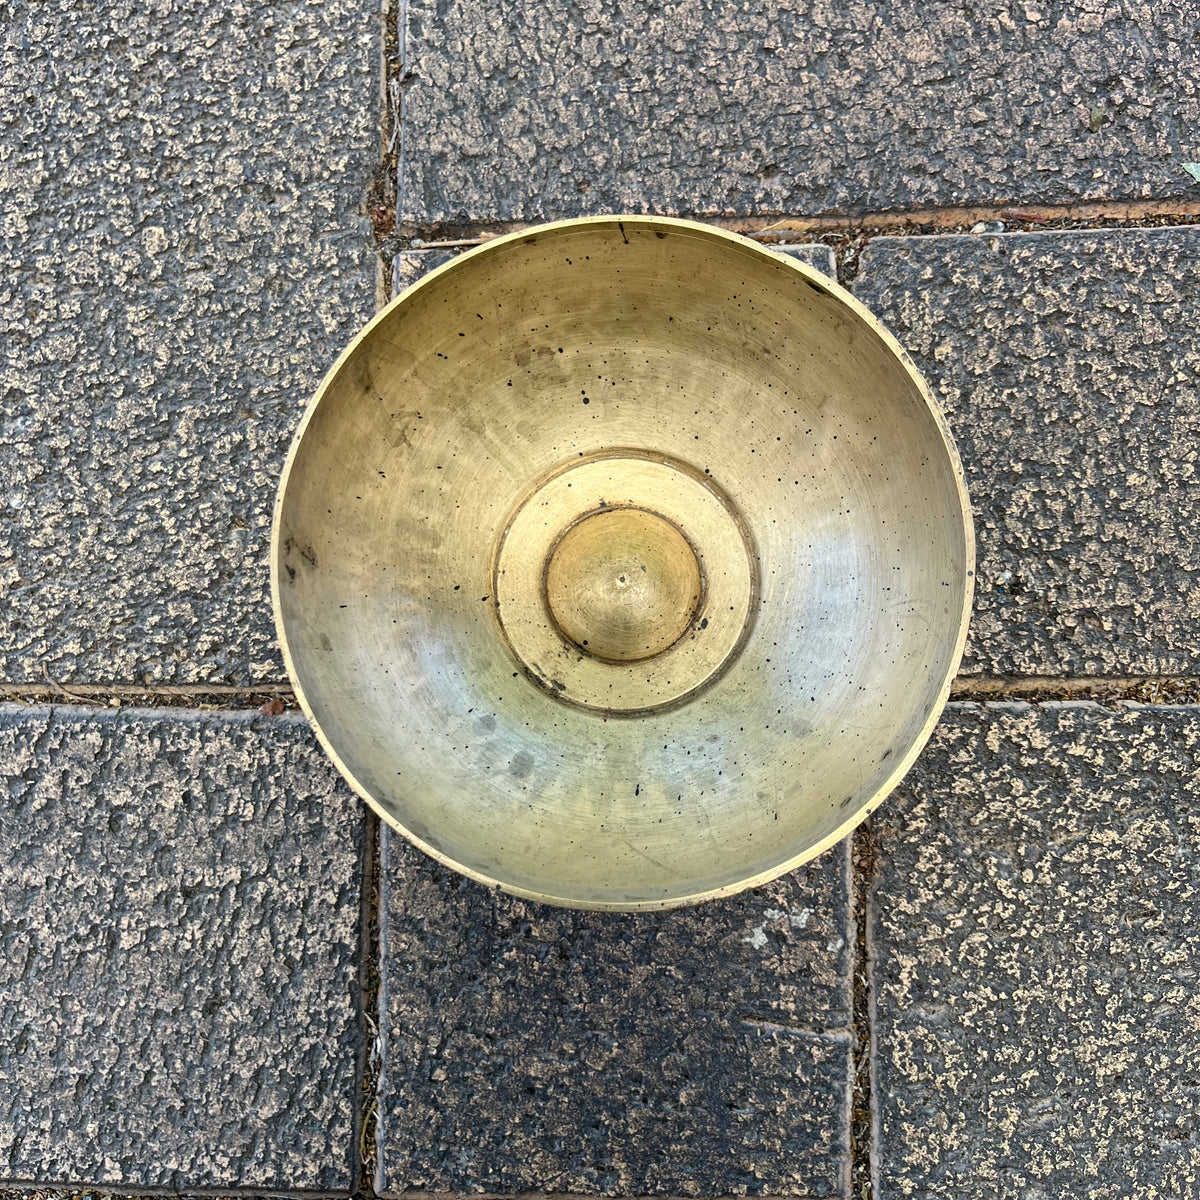 Original Brass Bowl - 1